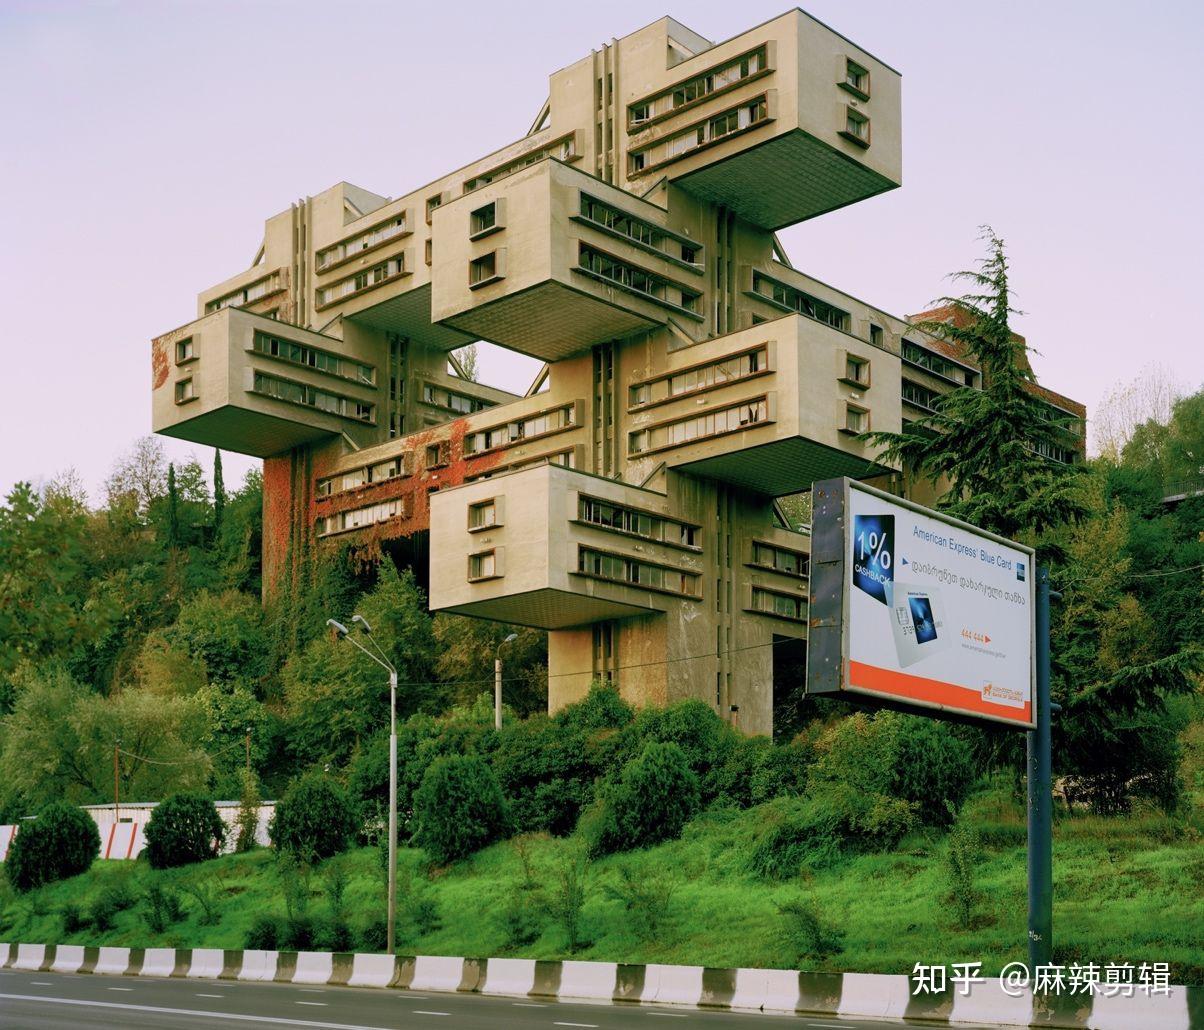 苏联迷恋的未来主义建筑:没有最怪,只有更怪,如今大多已荒废? 